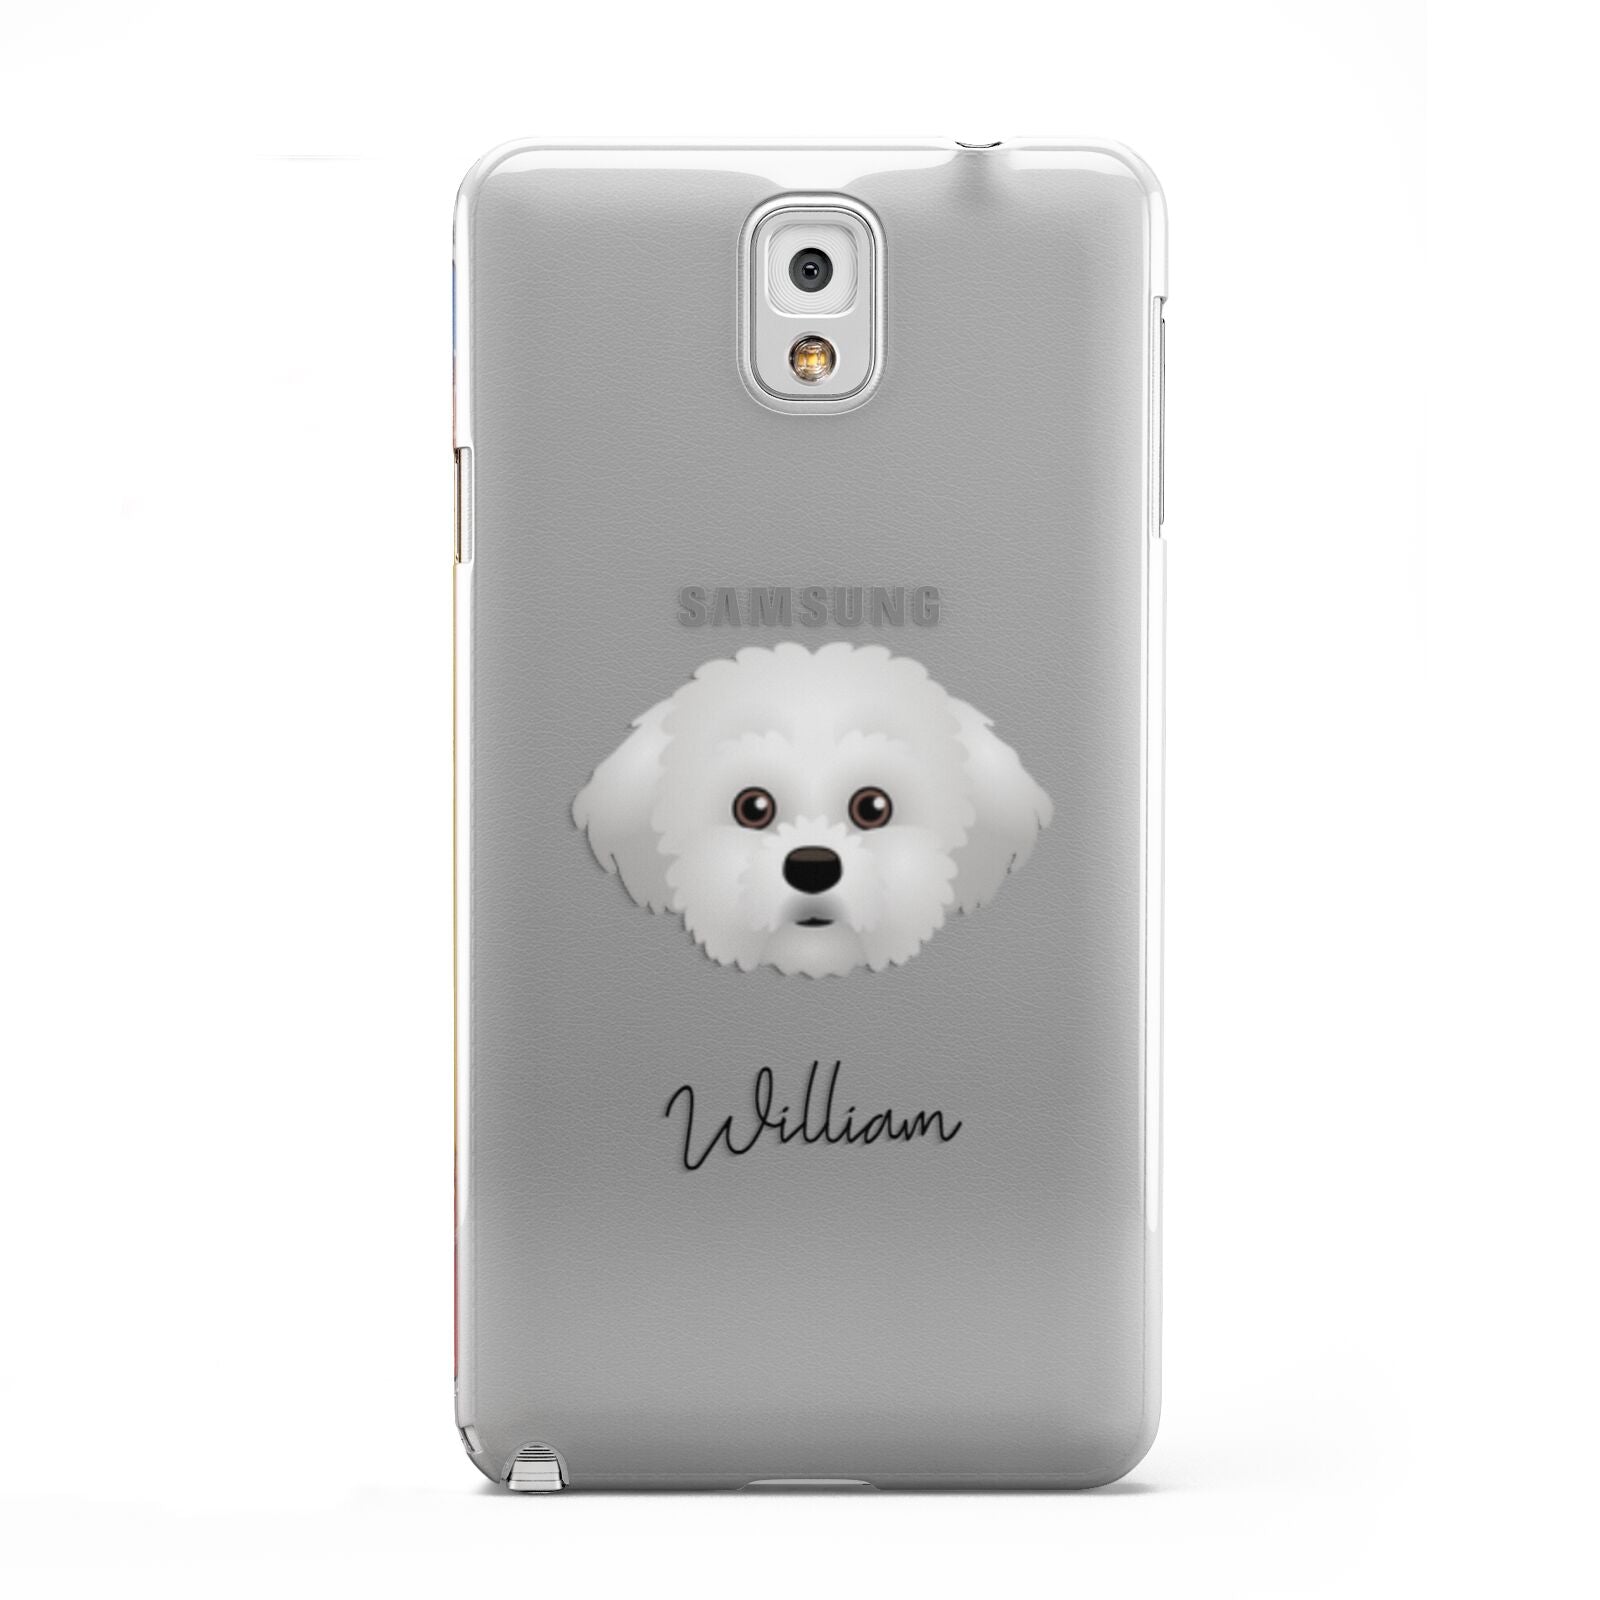 Maltichon Personalised Samsung Galaxy Note 3 Case